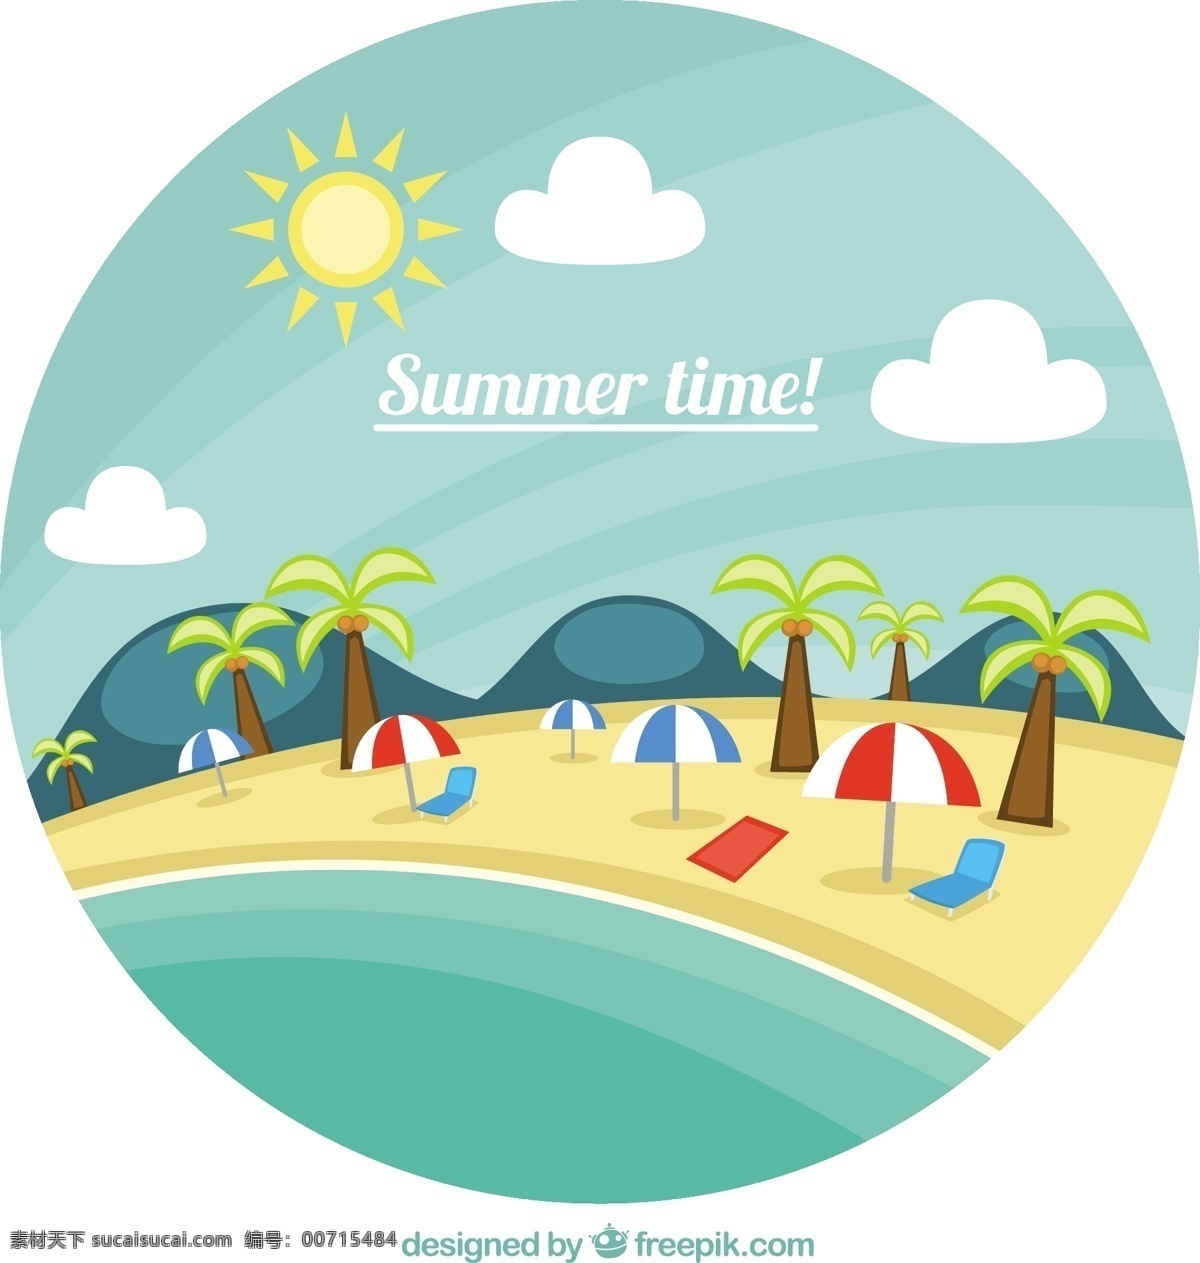 夏季假期 夏天 沙滩 大海 风景 热带度假 砂 放松 夏天的海滩 节假日 毛巾 海边 阳伞 白色